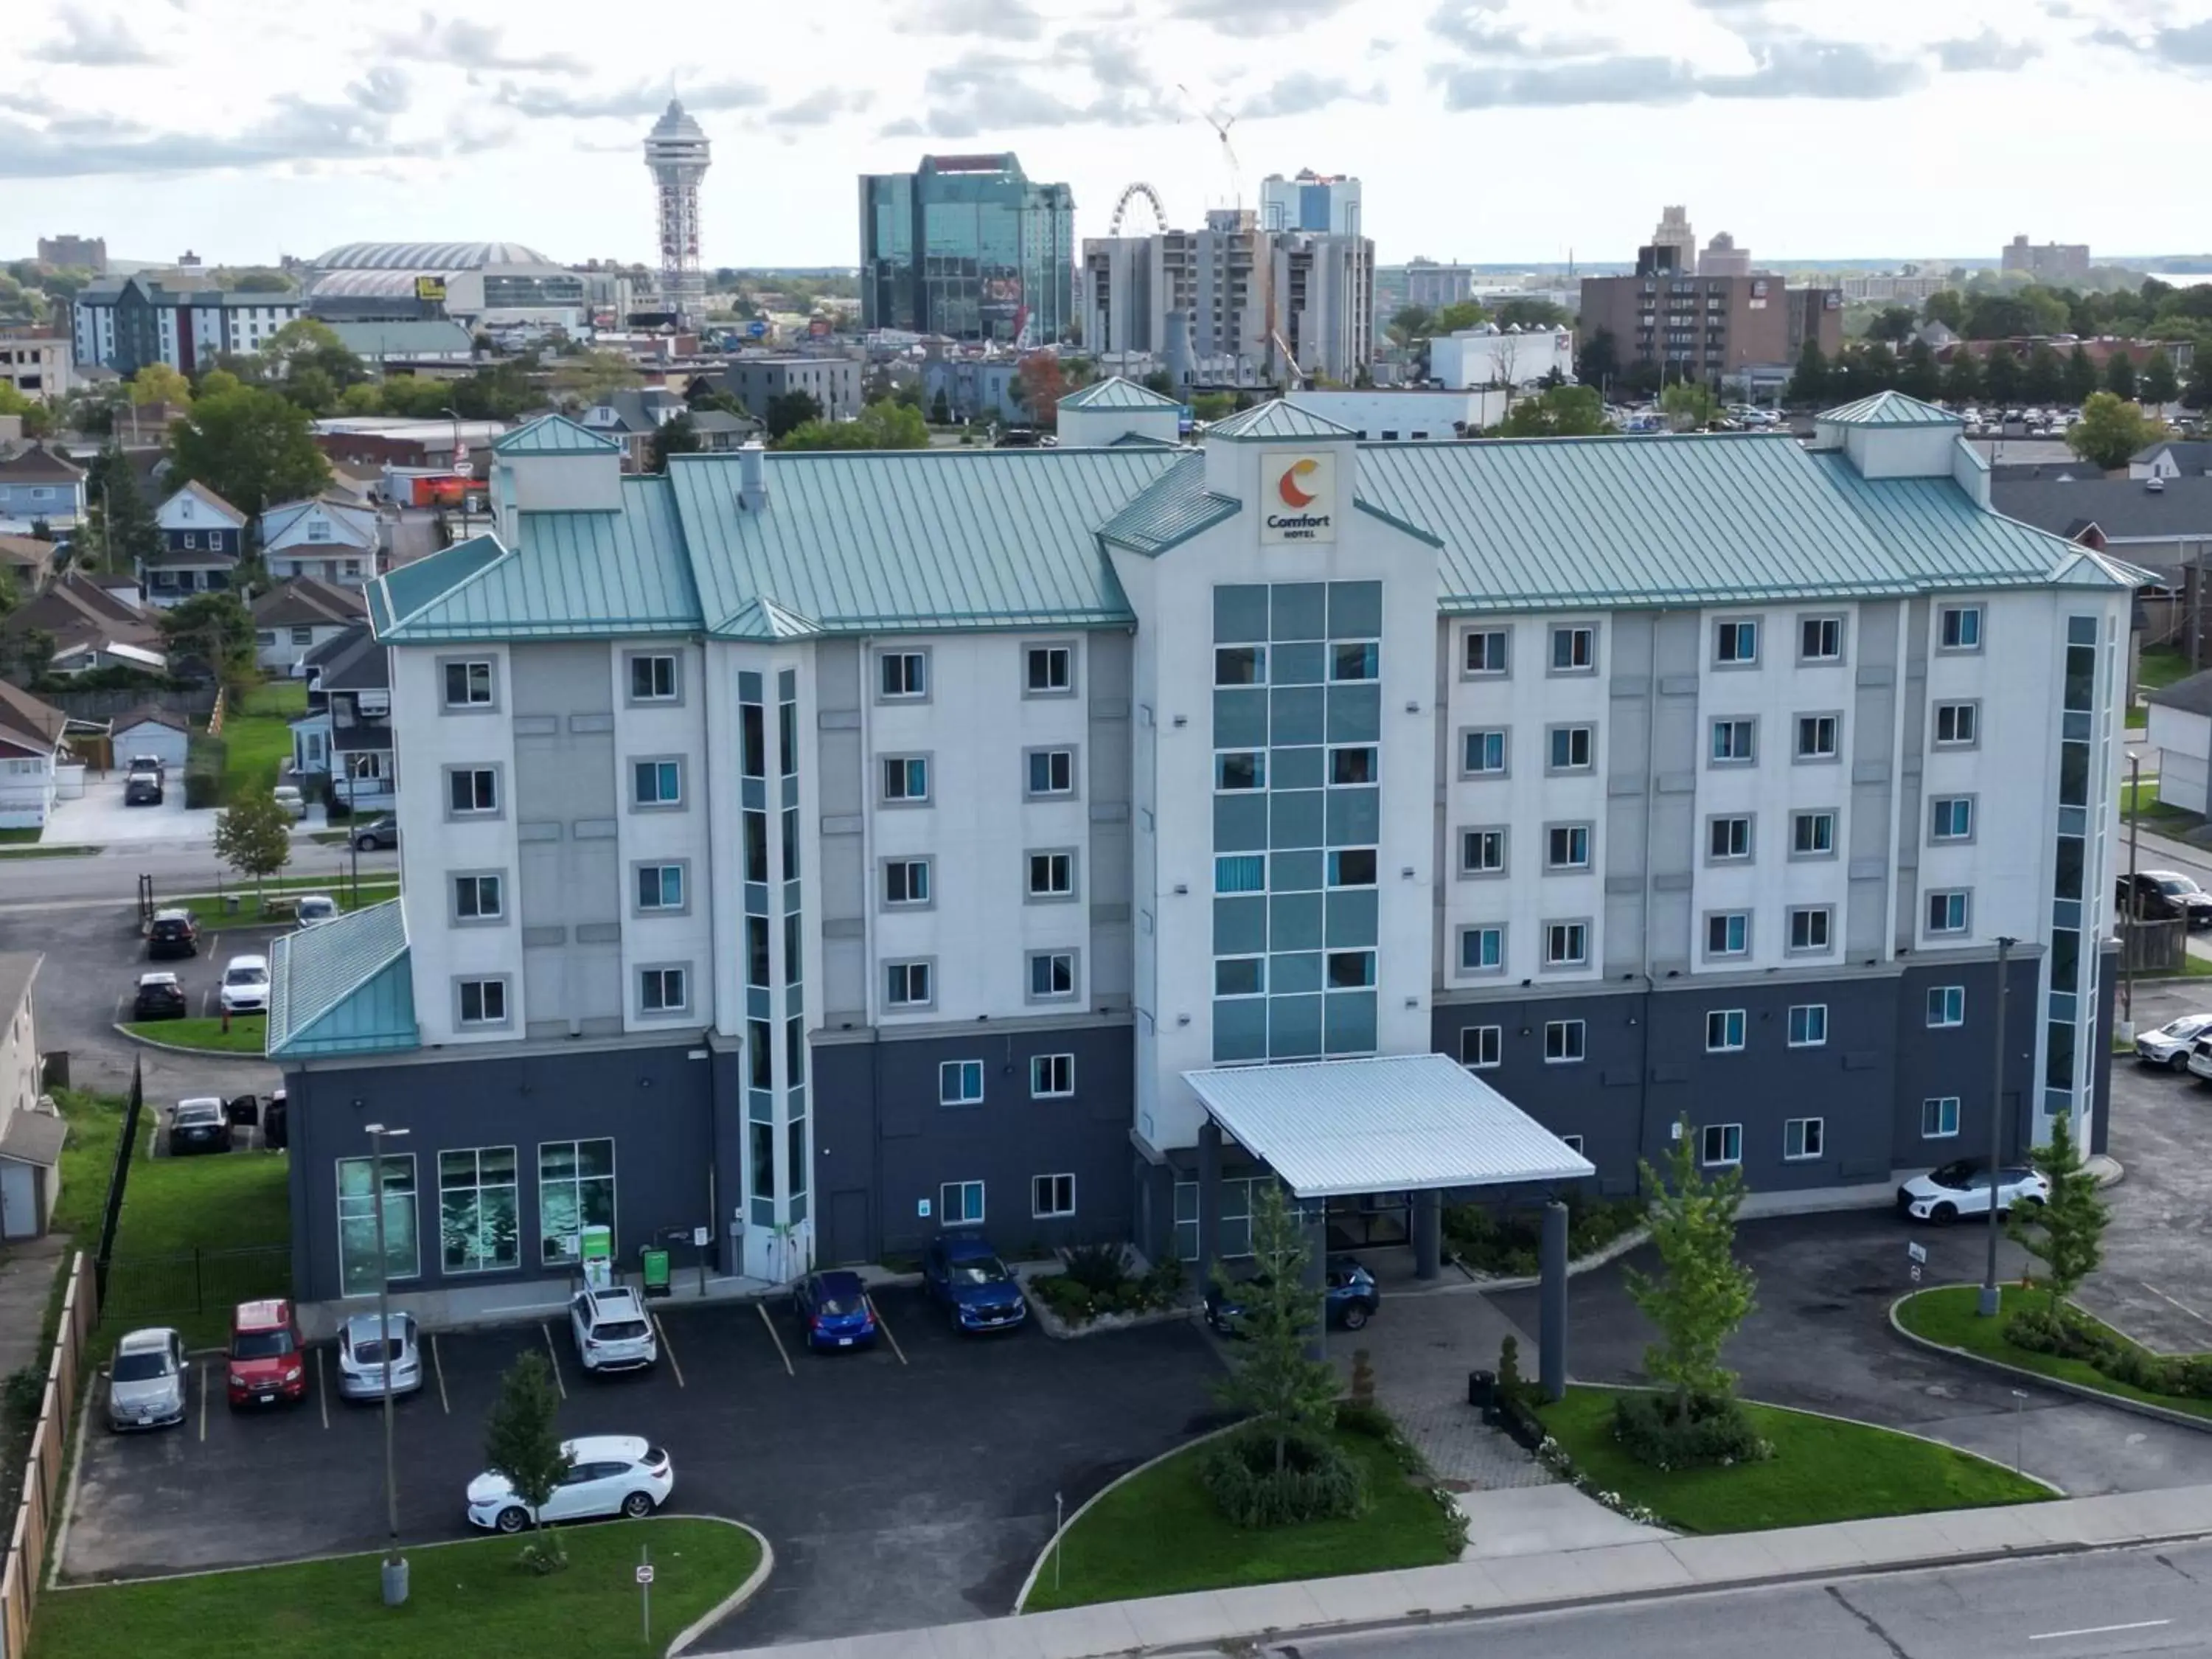 Property building, Bird's-eye View in Comfort Hotel